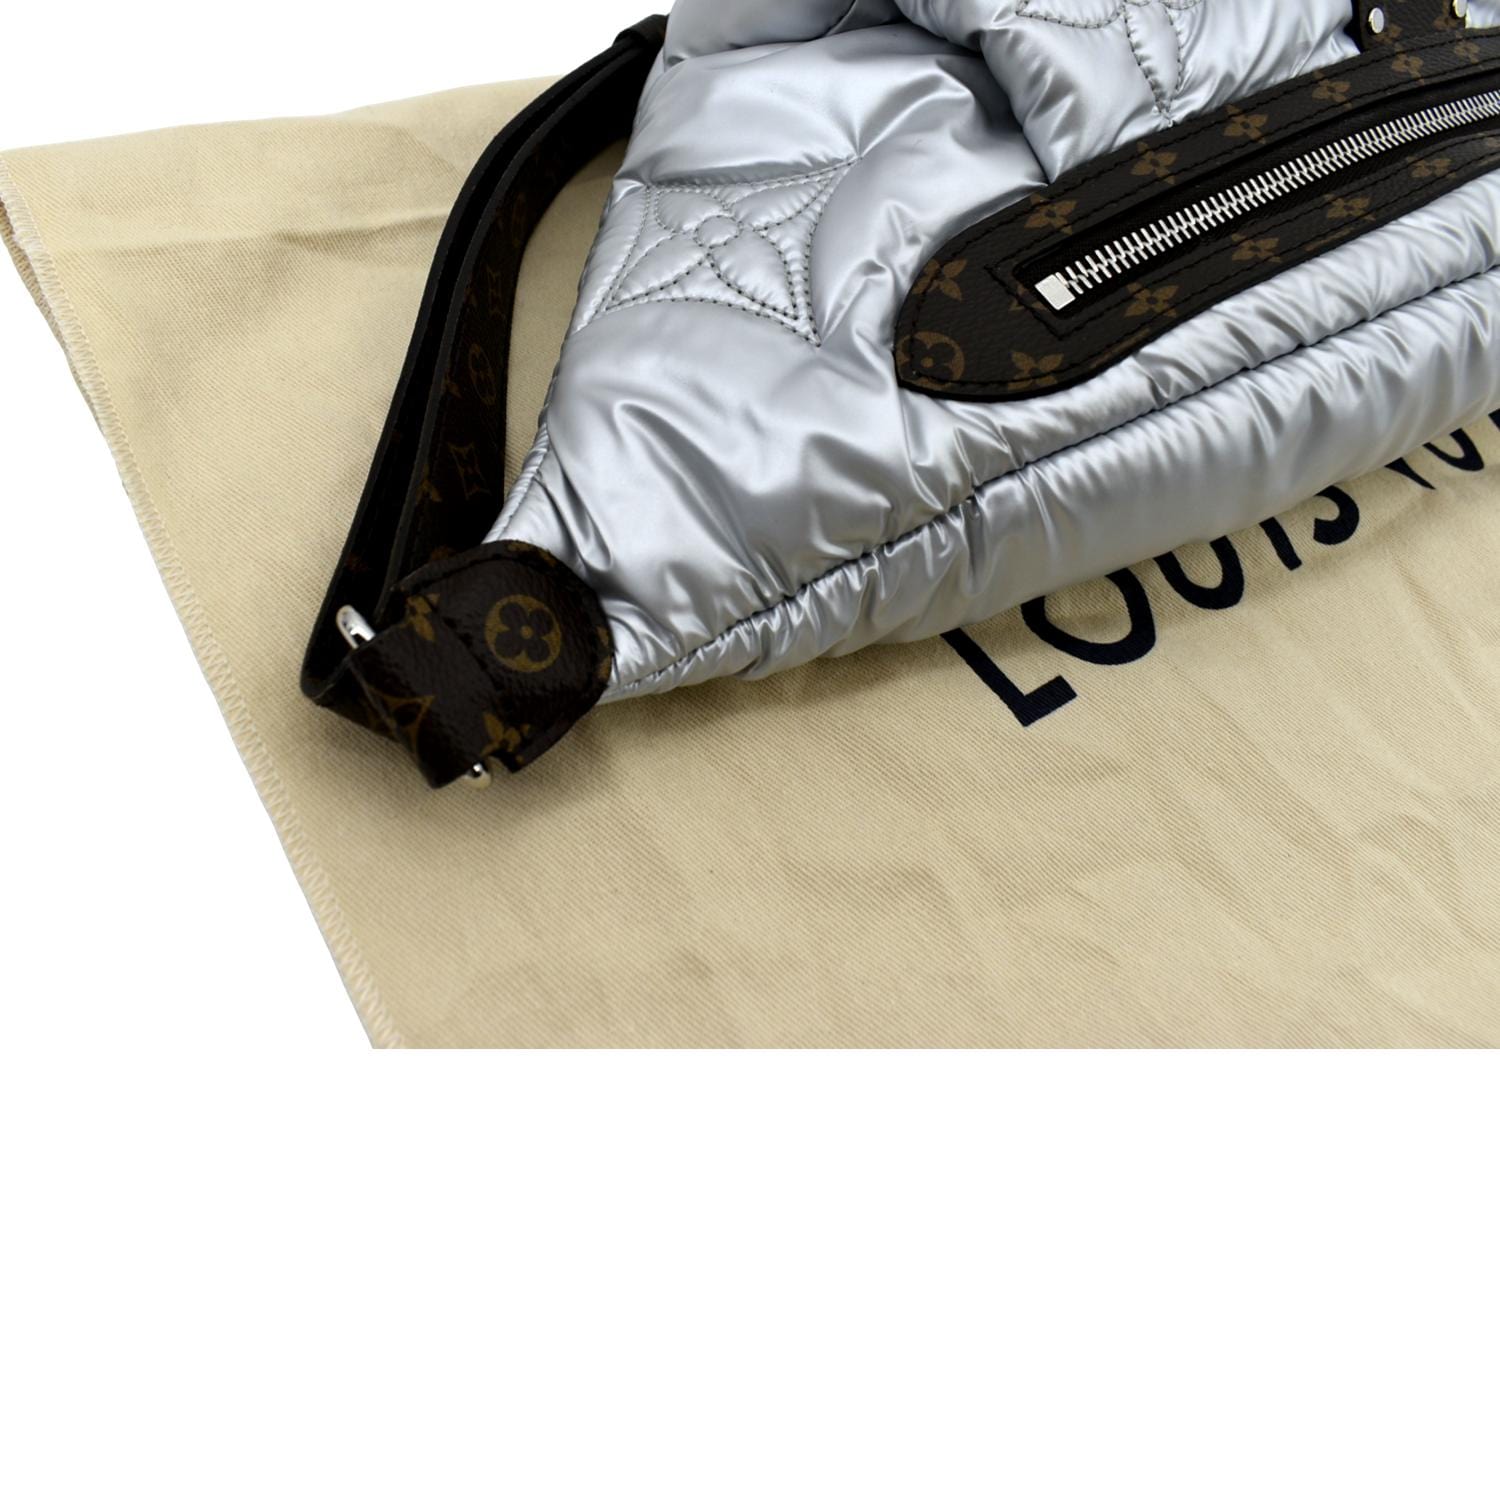 Louis Vuitton Nylon Monogram Canvas Maxi Bumbag Silver